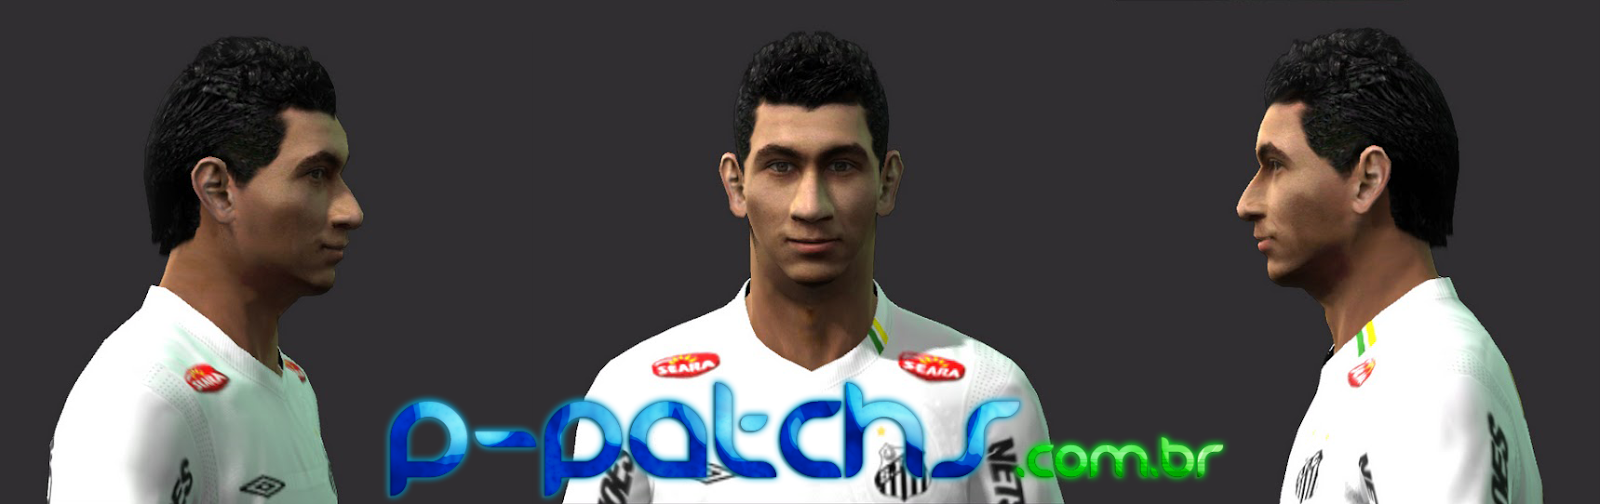 Paulo Henrique Ganso Face download P-Patchs